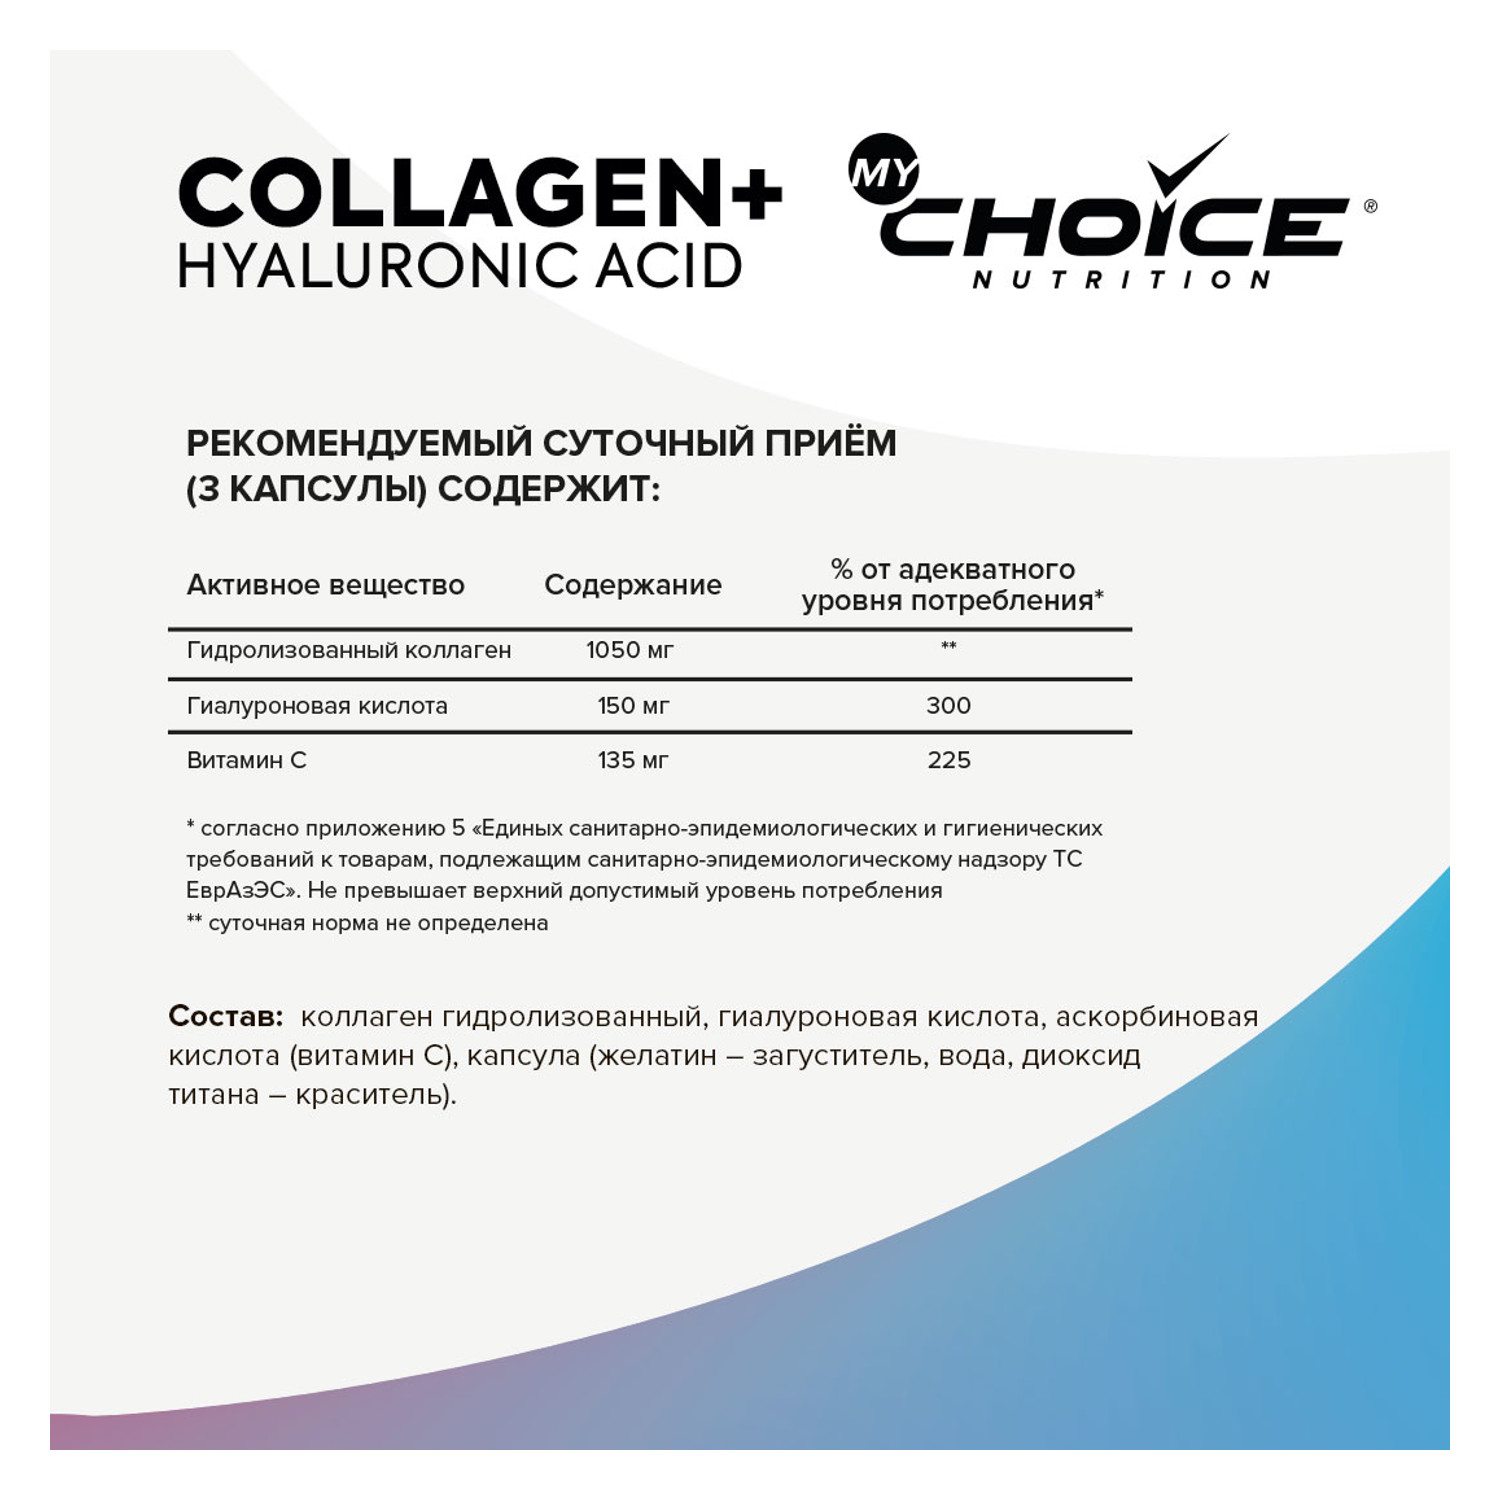 Комплексная пищевая добавка MyChoice Nutrition Collagen+ Hyaluronic Acid 90капсул - фото 2